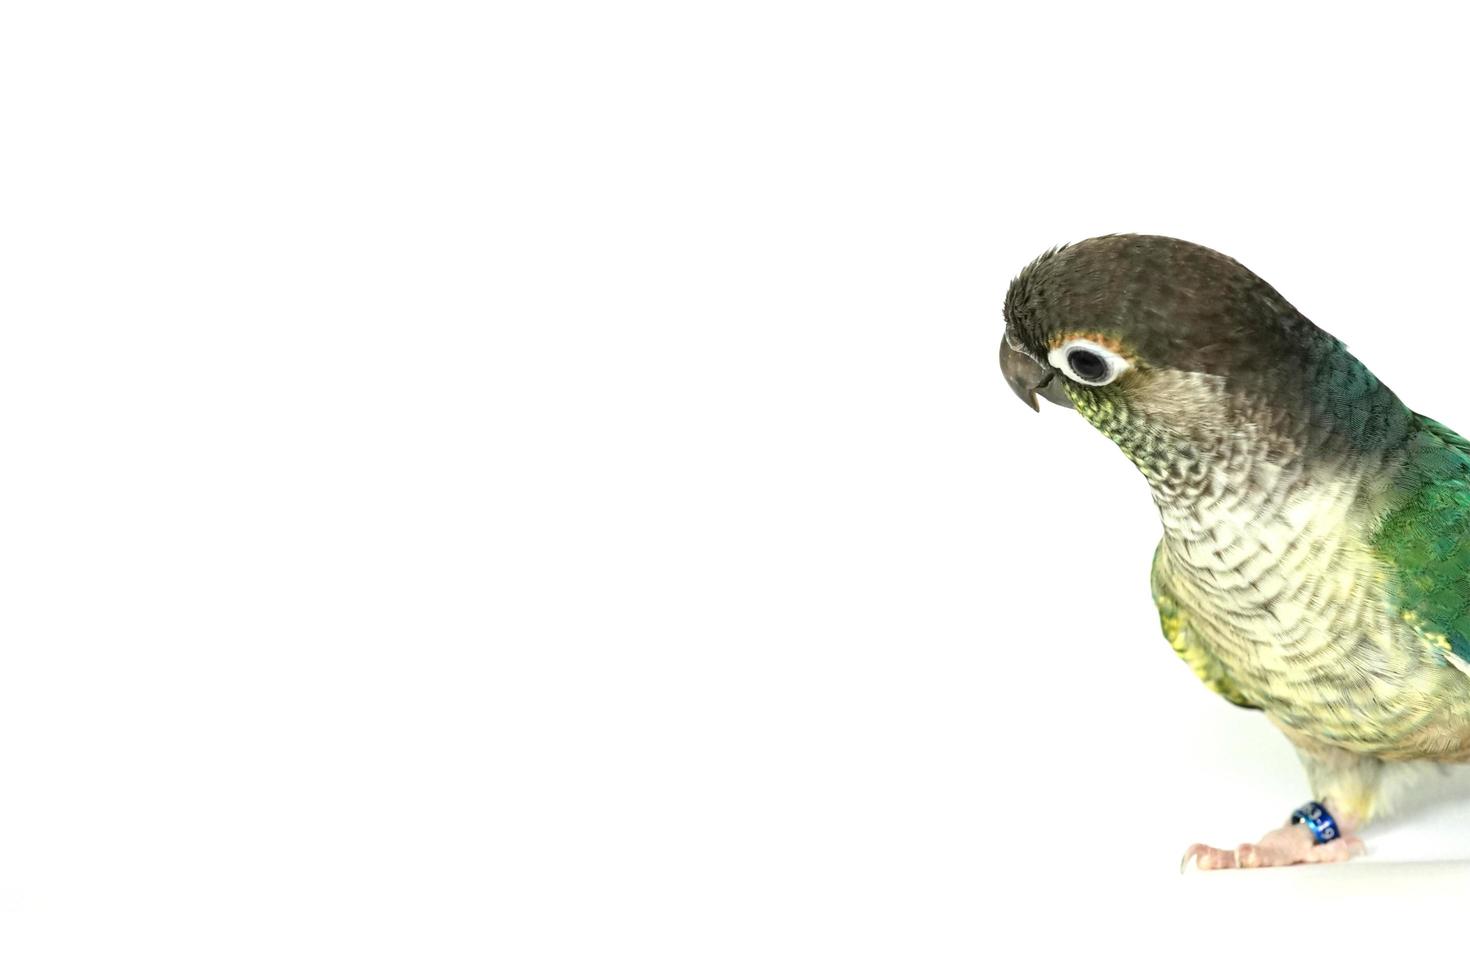 verde bochecha conure azul turquesa amarelo sided color isolated on right edgeimagem fundo branco, o pequeno papagaio do gênero pyrrhura, tem um bico afiado. nativa da américa do sul. foto